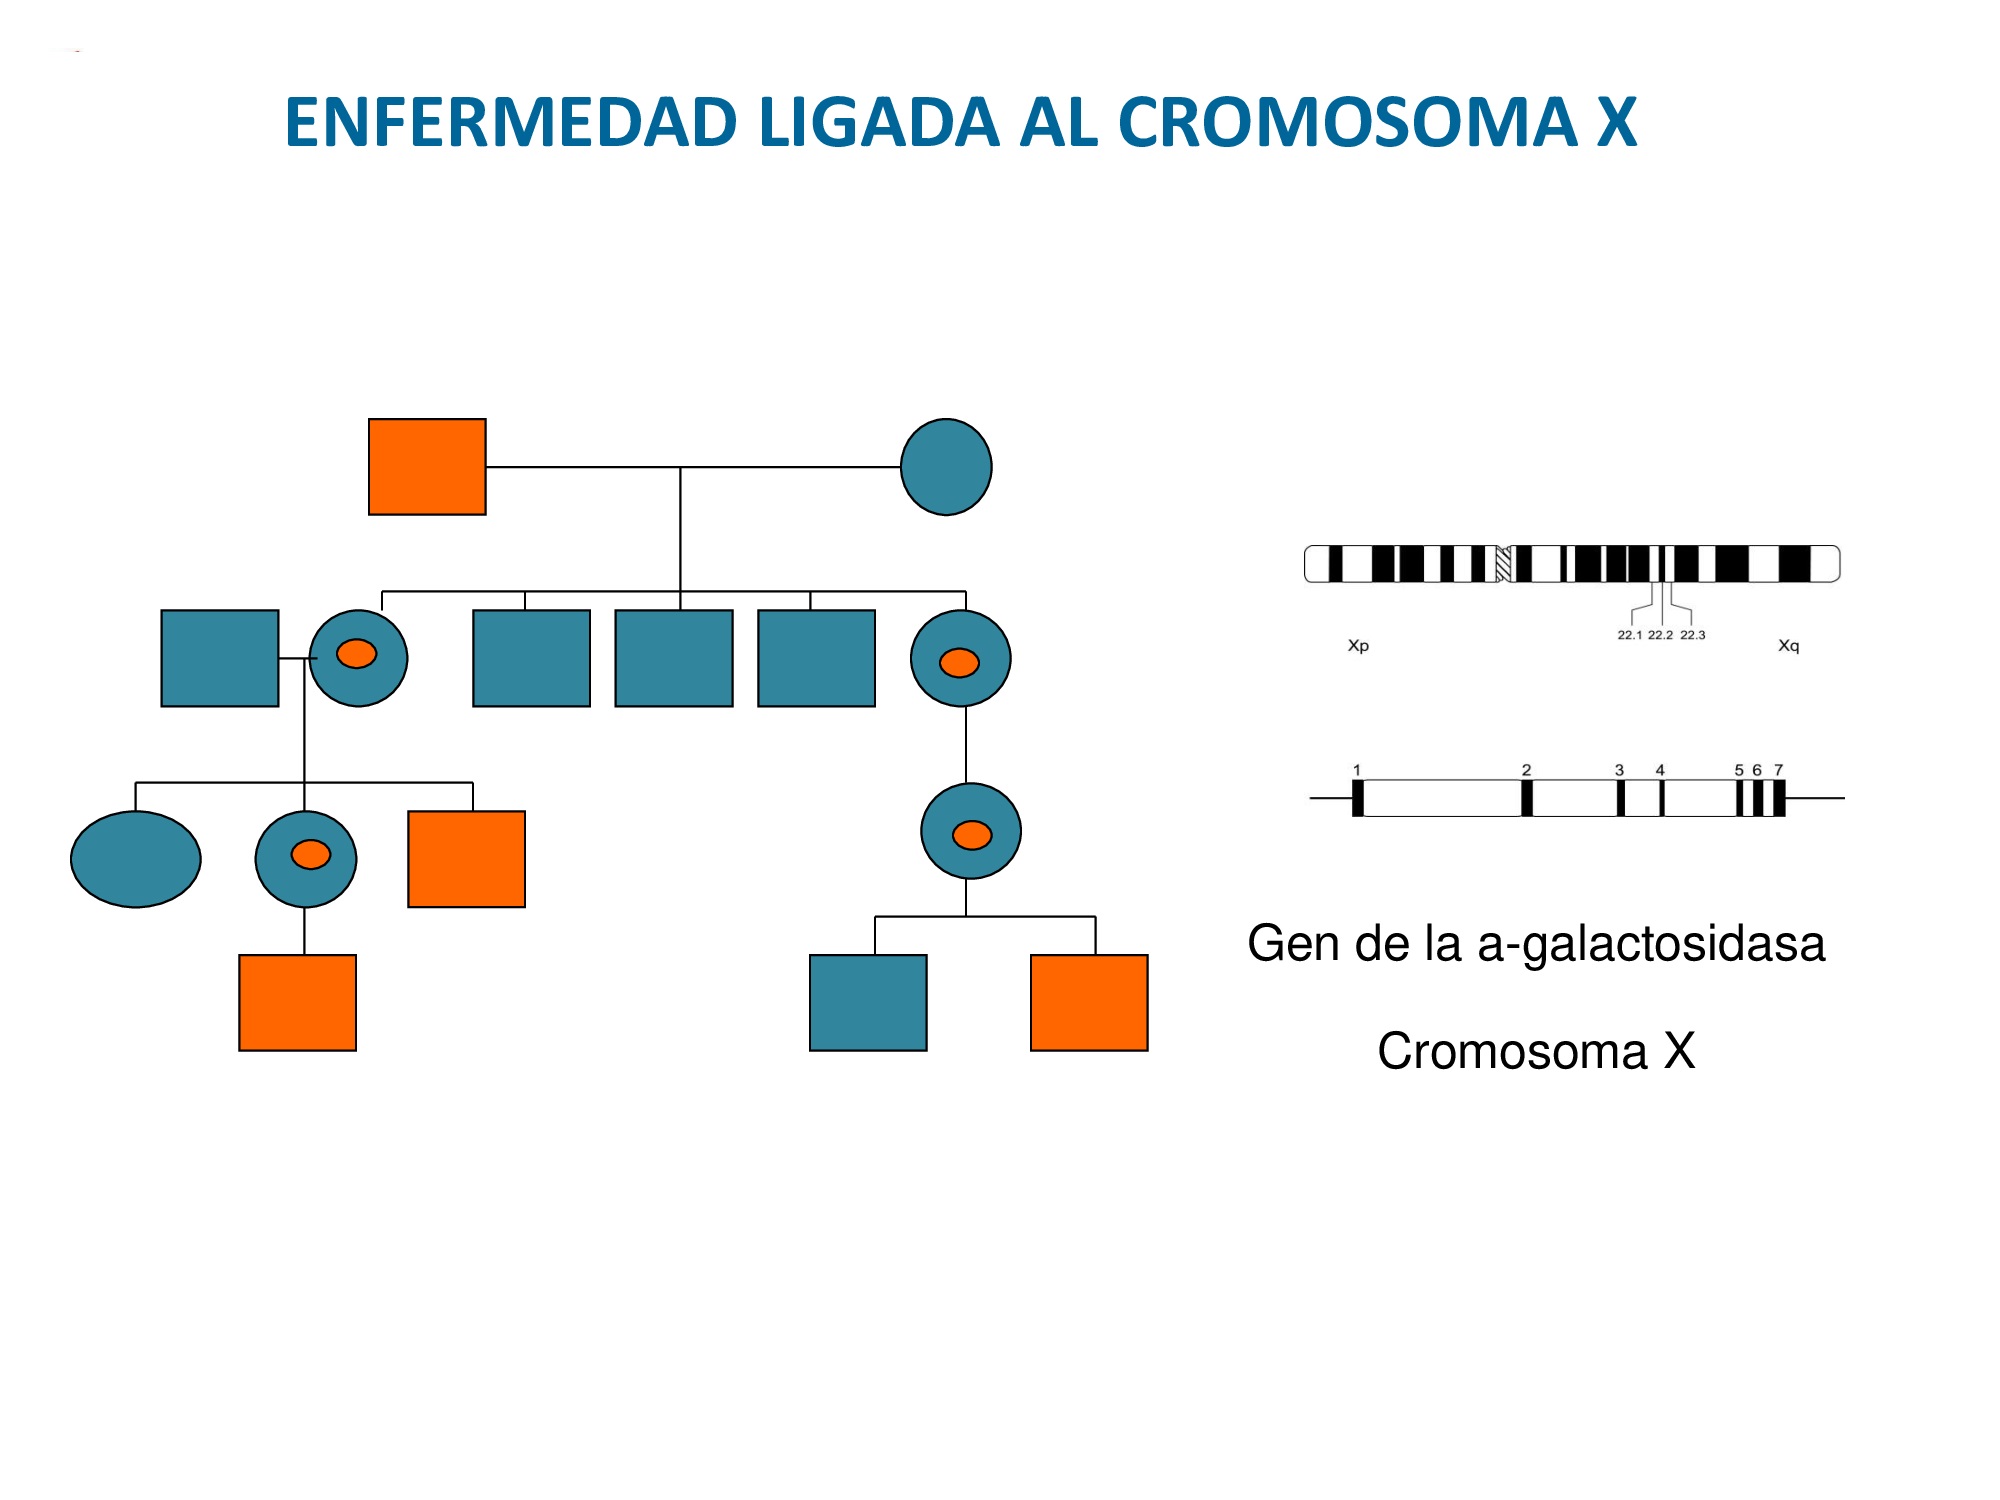 Herencia ligada al cromosoma X: mujeres menos afectadas que varones, pero al igual que en el Alport padecen también la enfermedad. Mismos síntomas pero generalmente más leves y más tarde.